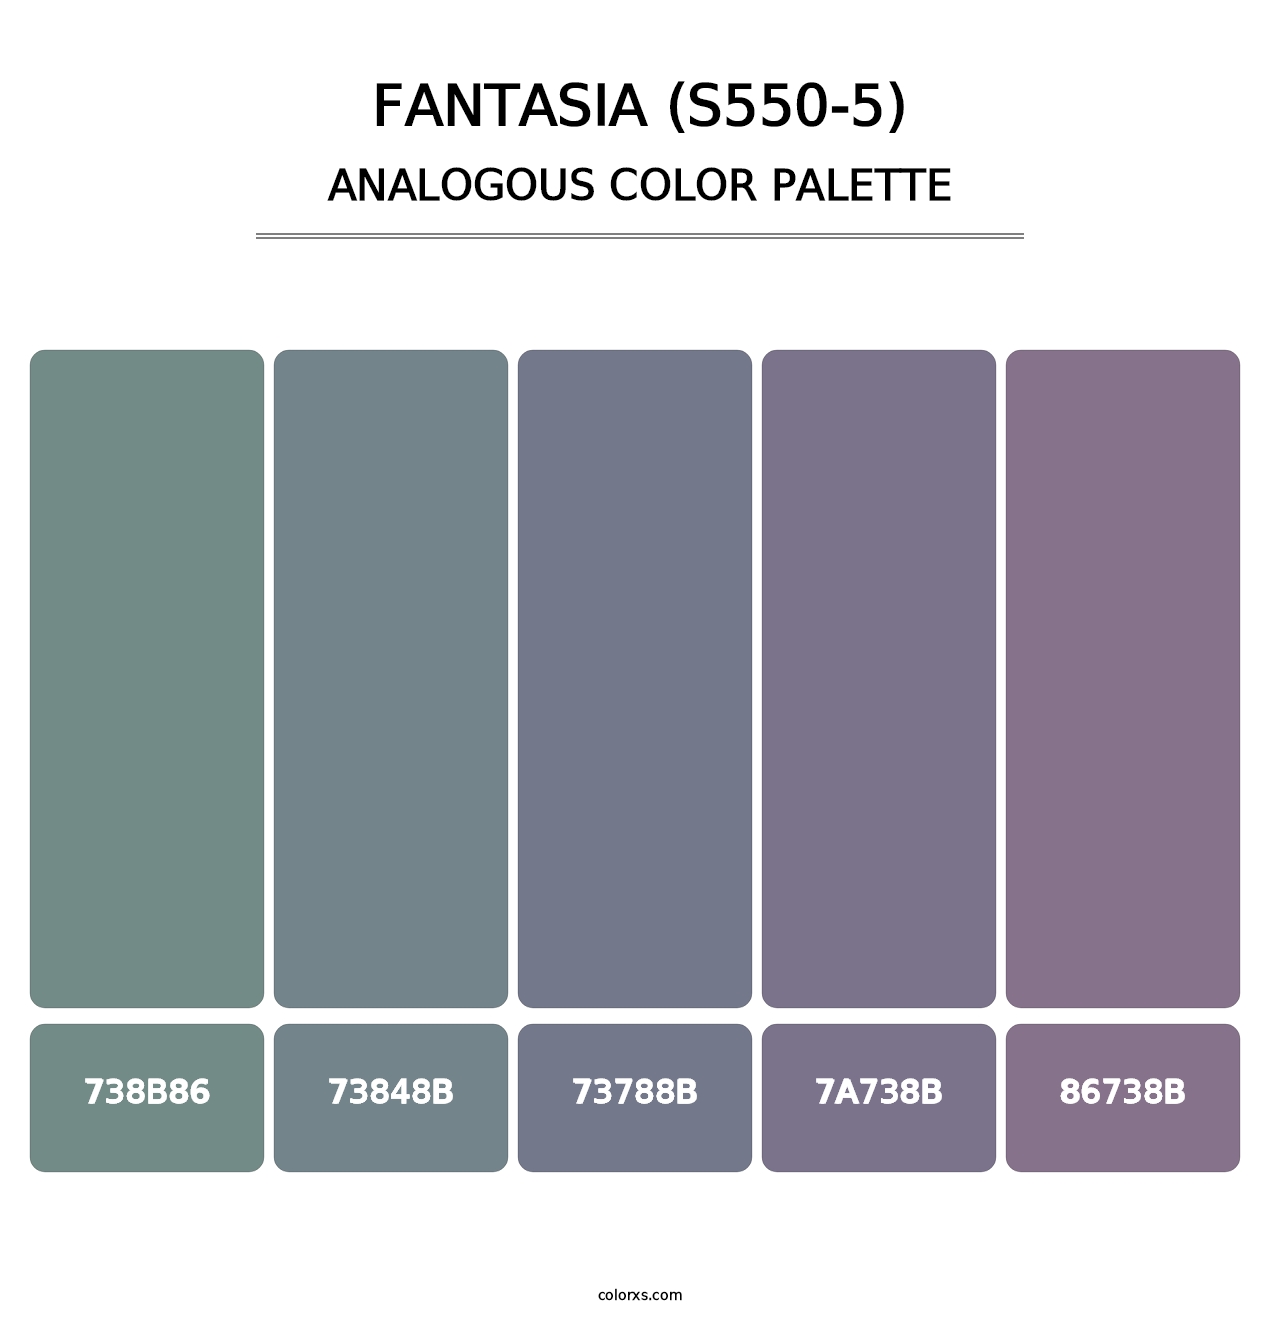 Fantasia (S550-5) - Analogous Color Palette